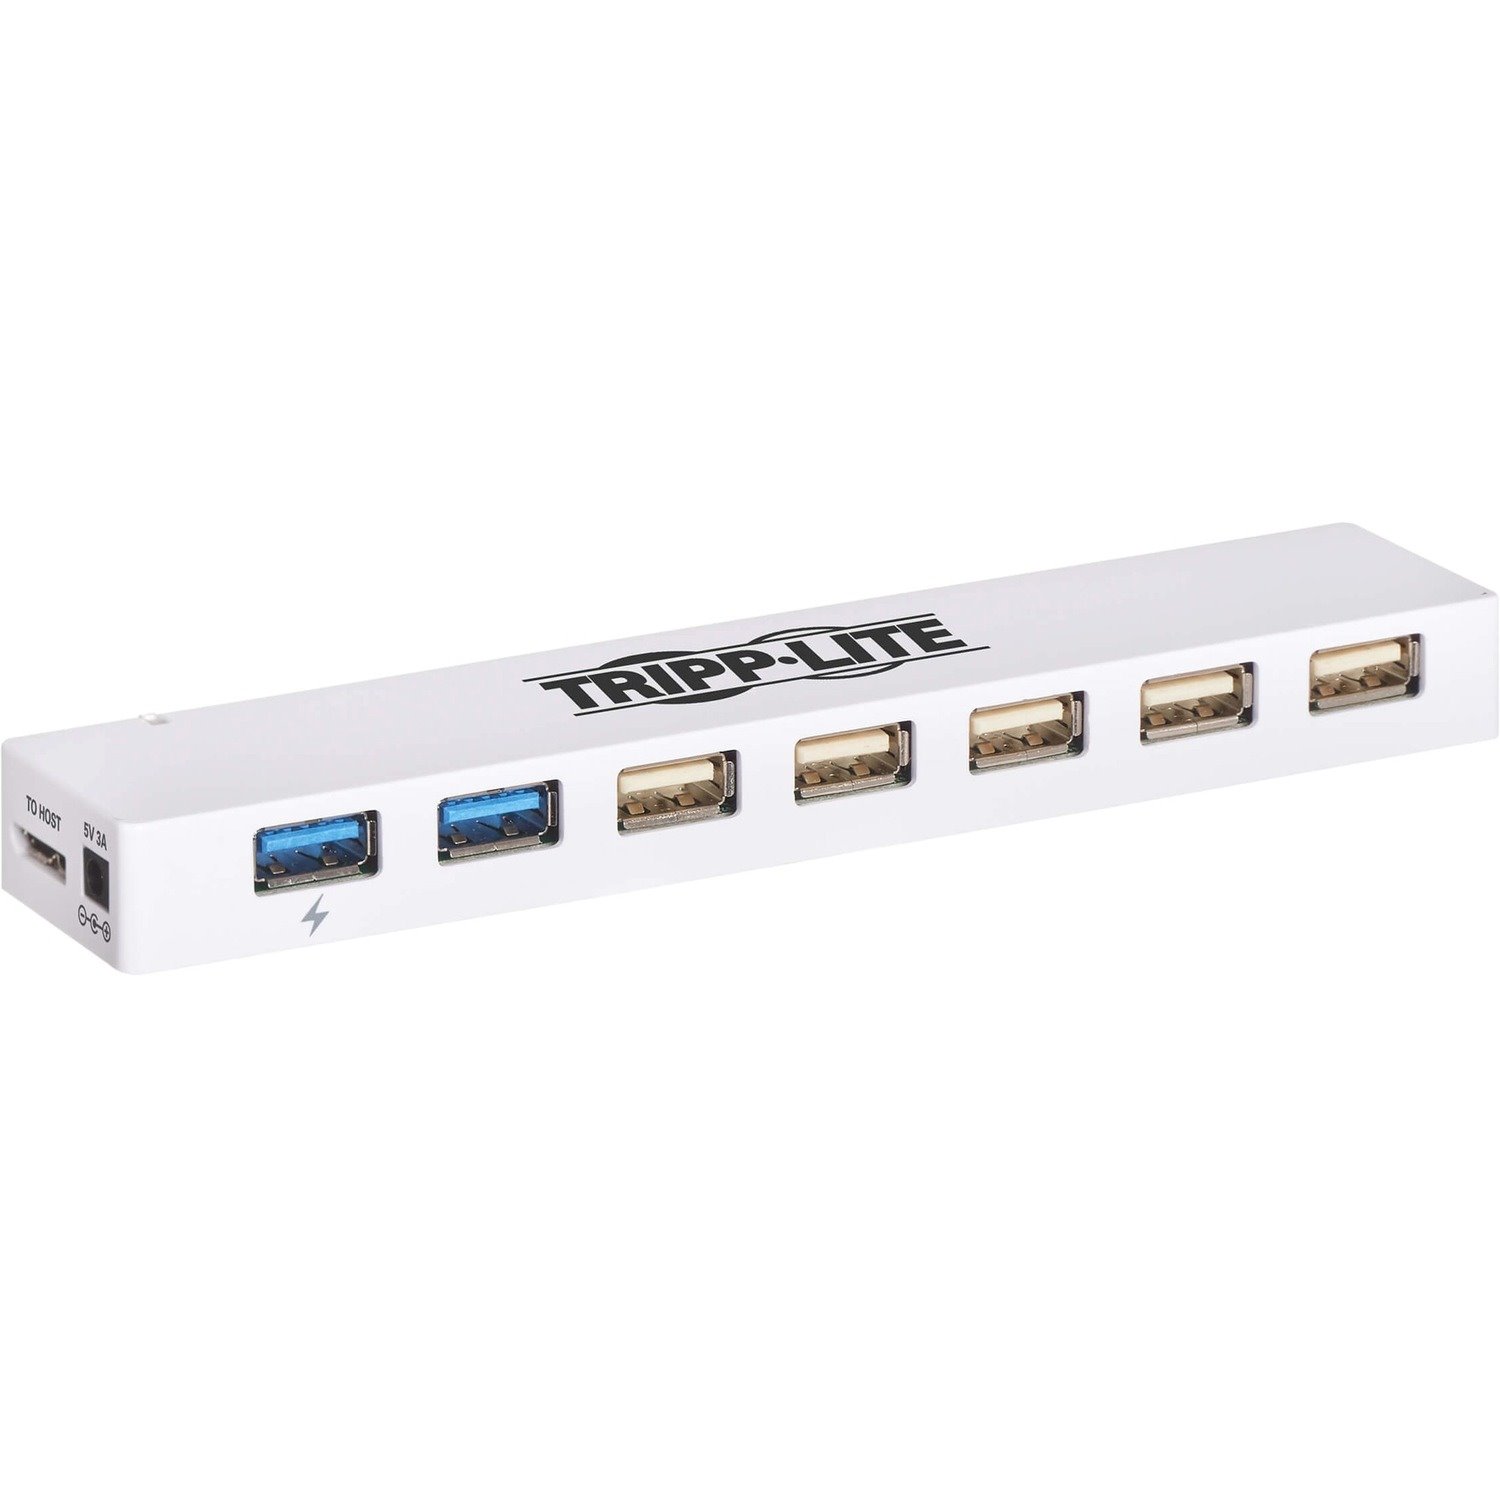 Tripp Lite USB Hub 7-Port 2 USB 3.0 / 5 USB 2.0 Ports Combo w/ USB Charging